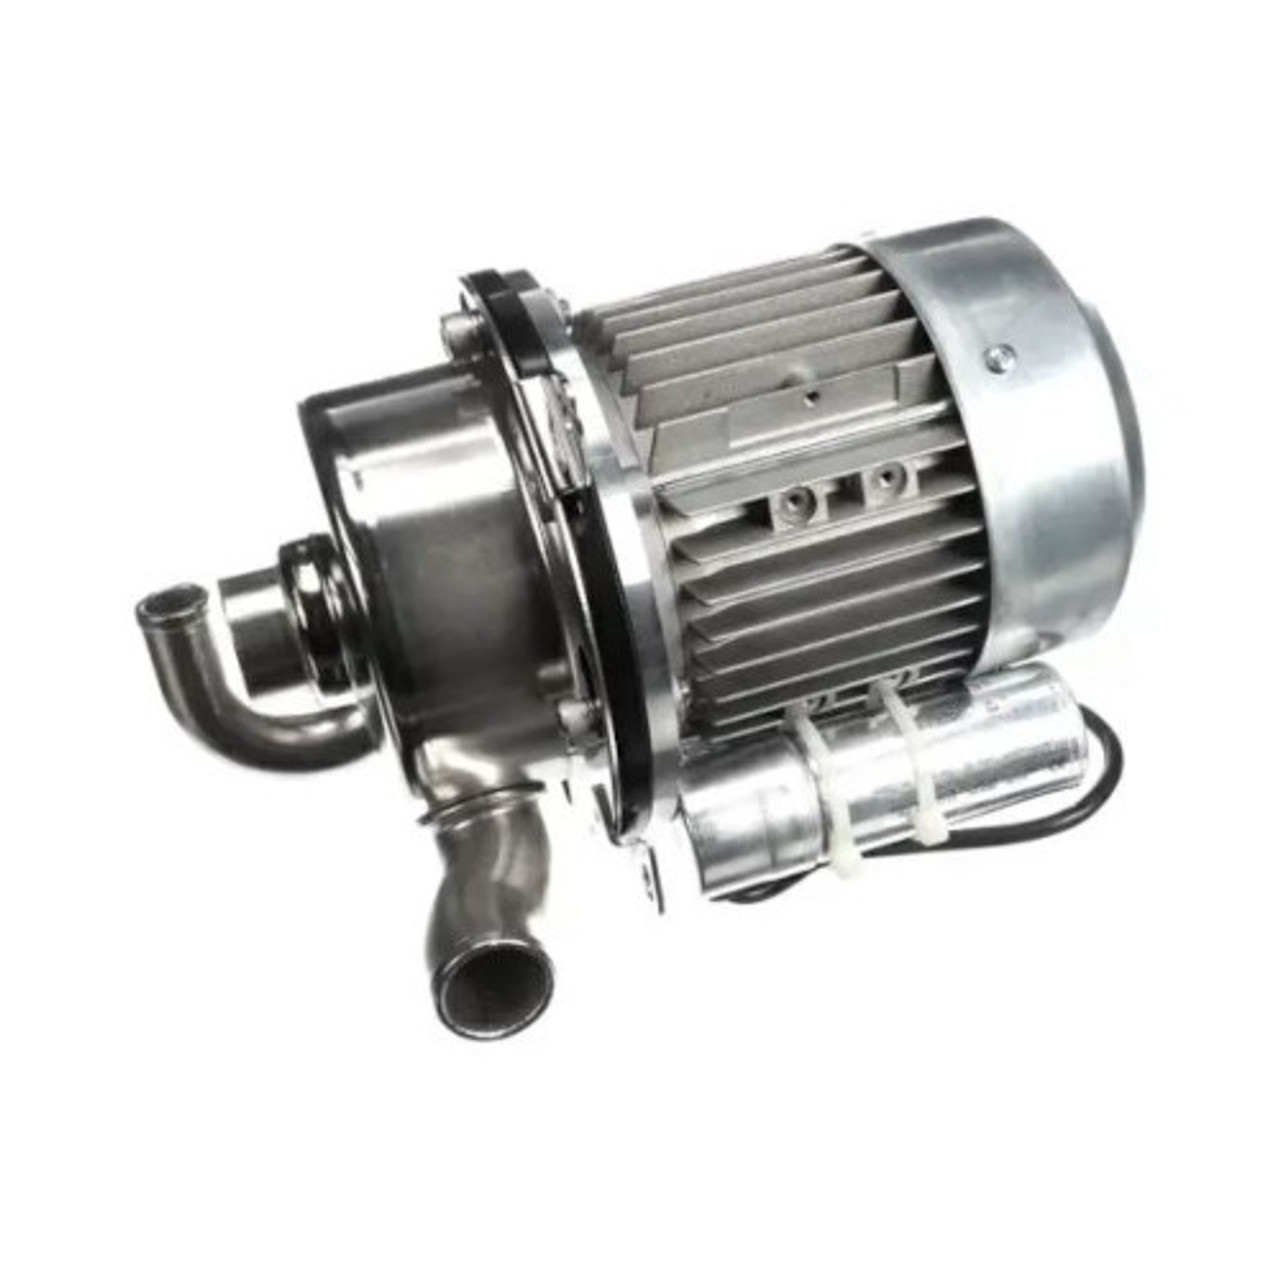 Jackson 06105-004-35-22 - Motor Pump 1 Hp 115/230V 60